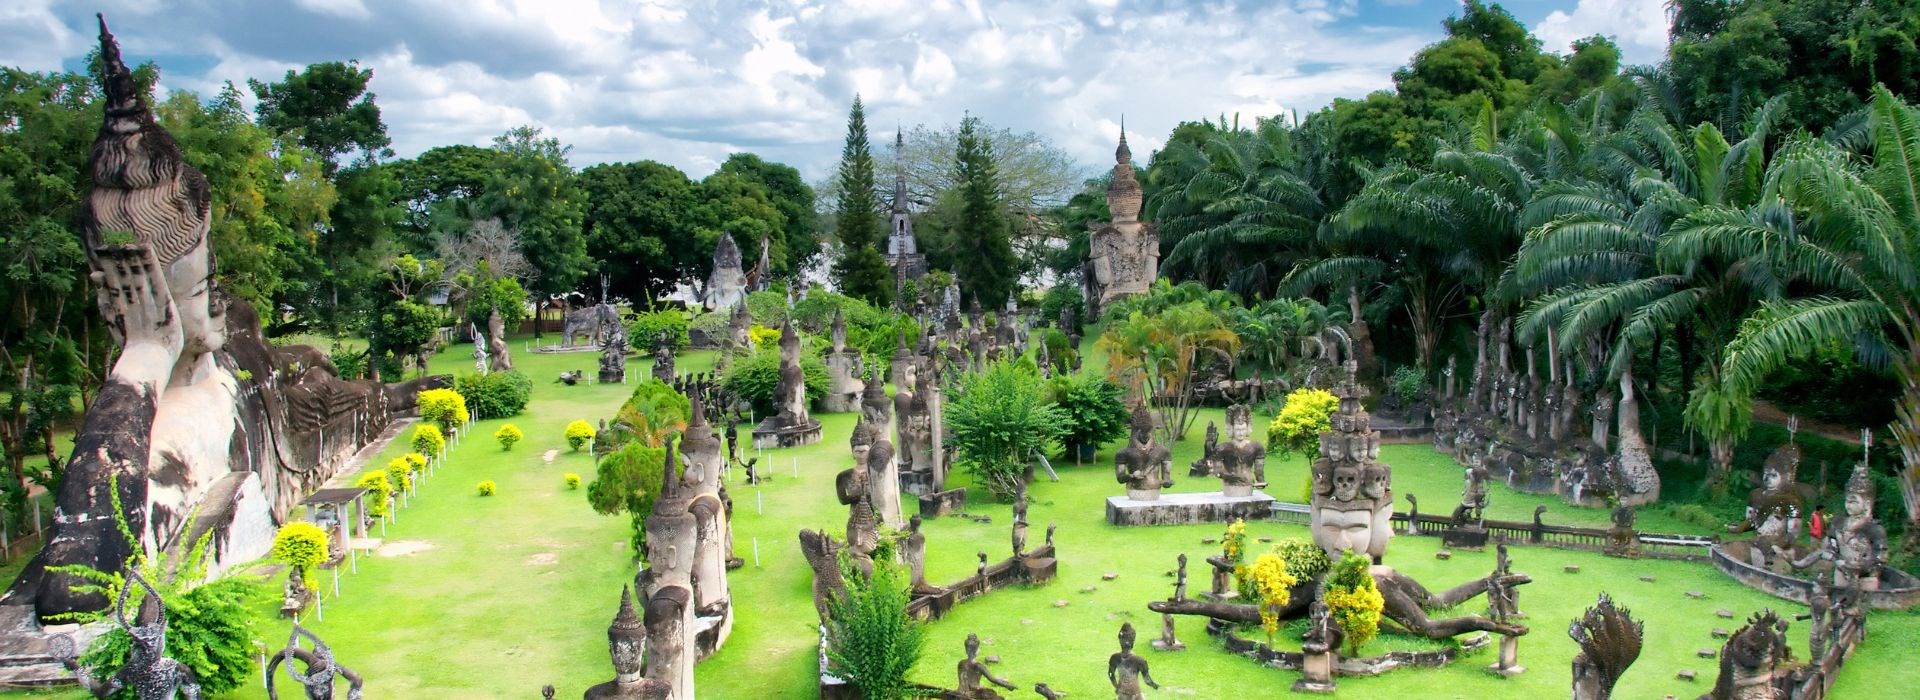 Visiter le parc des bouddhas entre solos au Laos